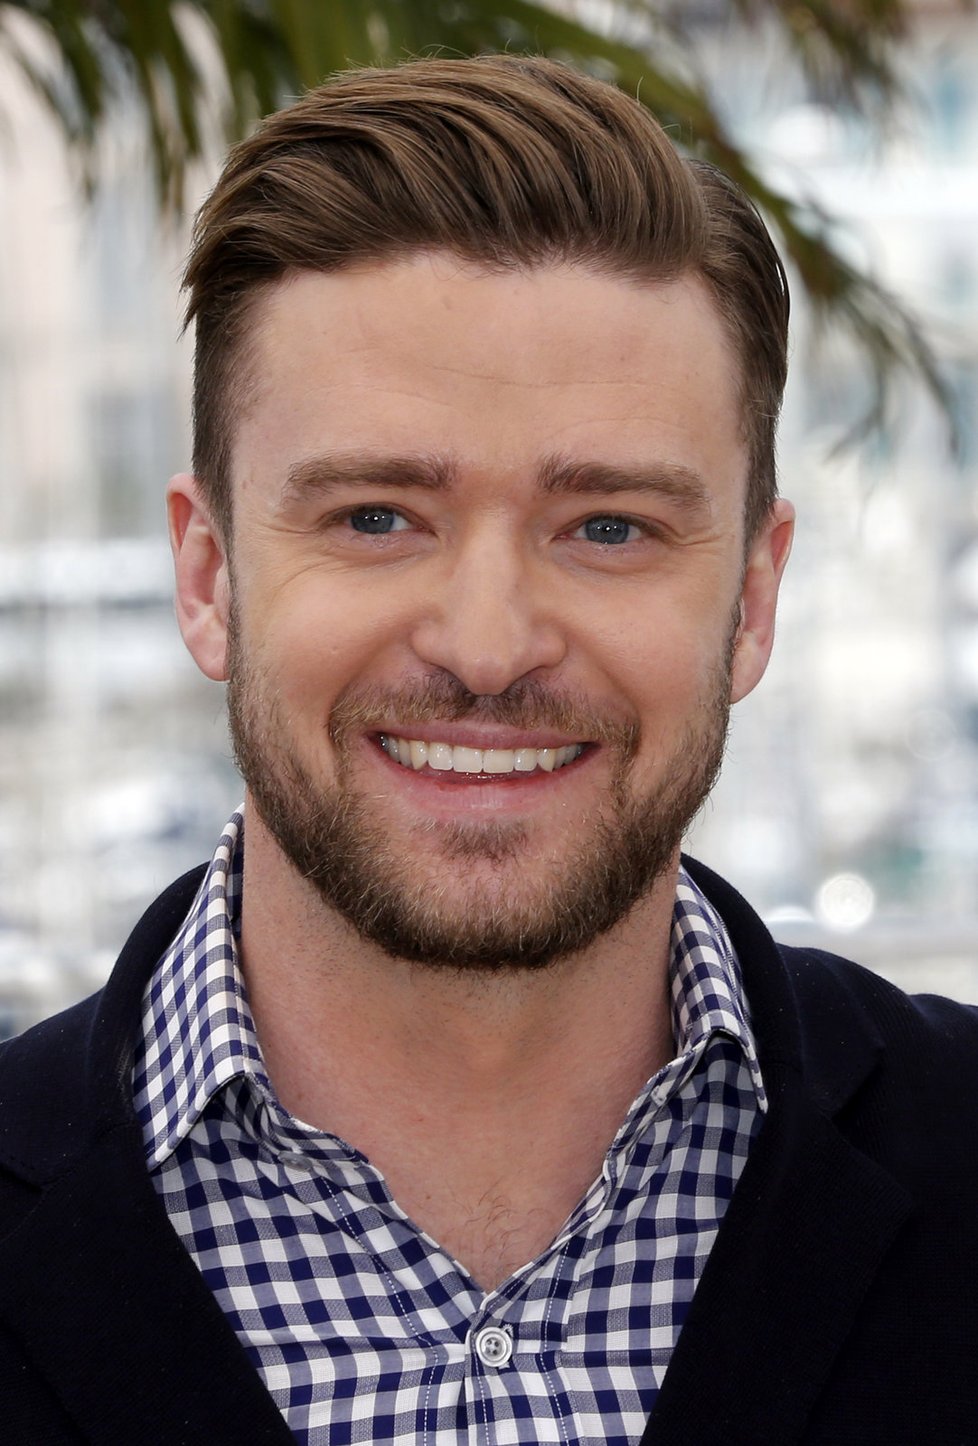 Justin Timberlake bude nejspíš tátou!